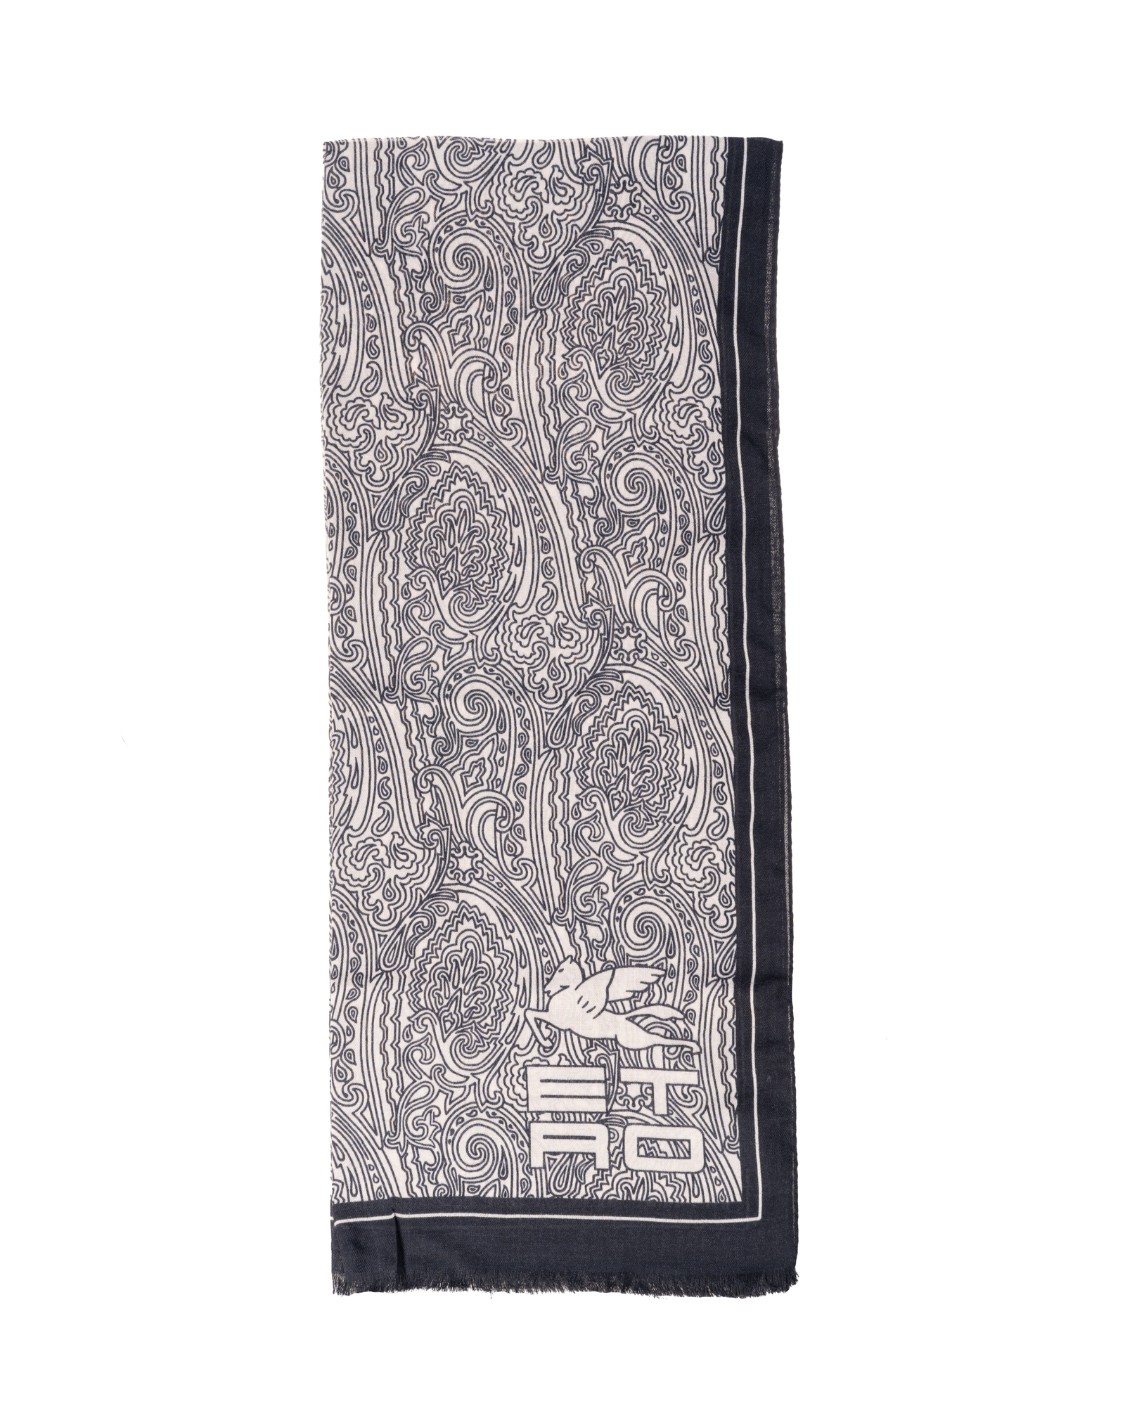 shop ETRO Saldi Sciarpa: Etro sciarpa in lana e seta, decorata da una stampa che interpreta l'iconico disegno Paisley in stile grafico, è impreziosita da logo ETRO CUBE e da un bordo a contrasto.
Dimensioni: 70 x 170cm.
Composizone: 70% lana, 30% seta.
Made in Italy.. 10007 4516-0001 number 5330225